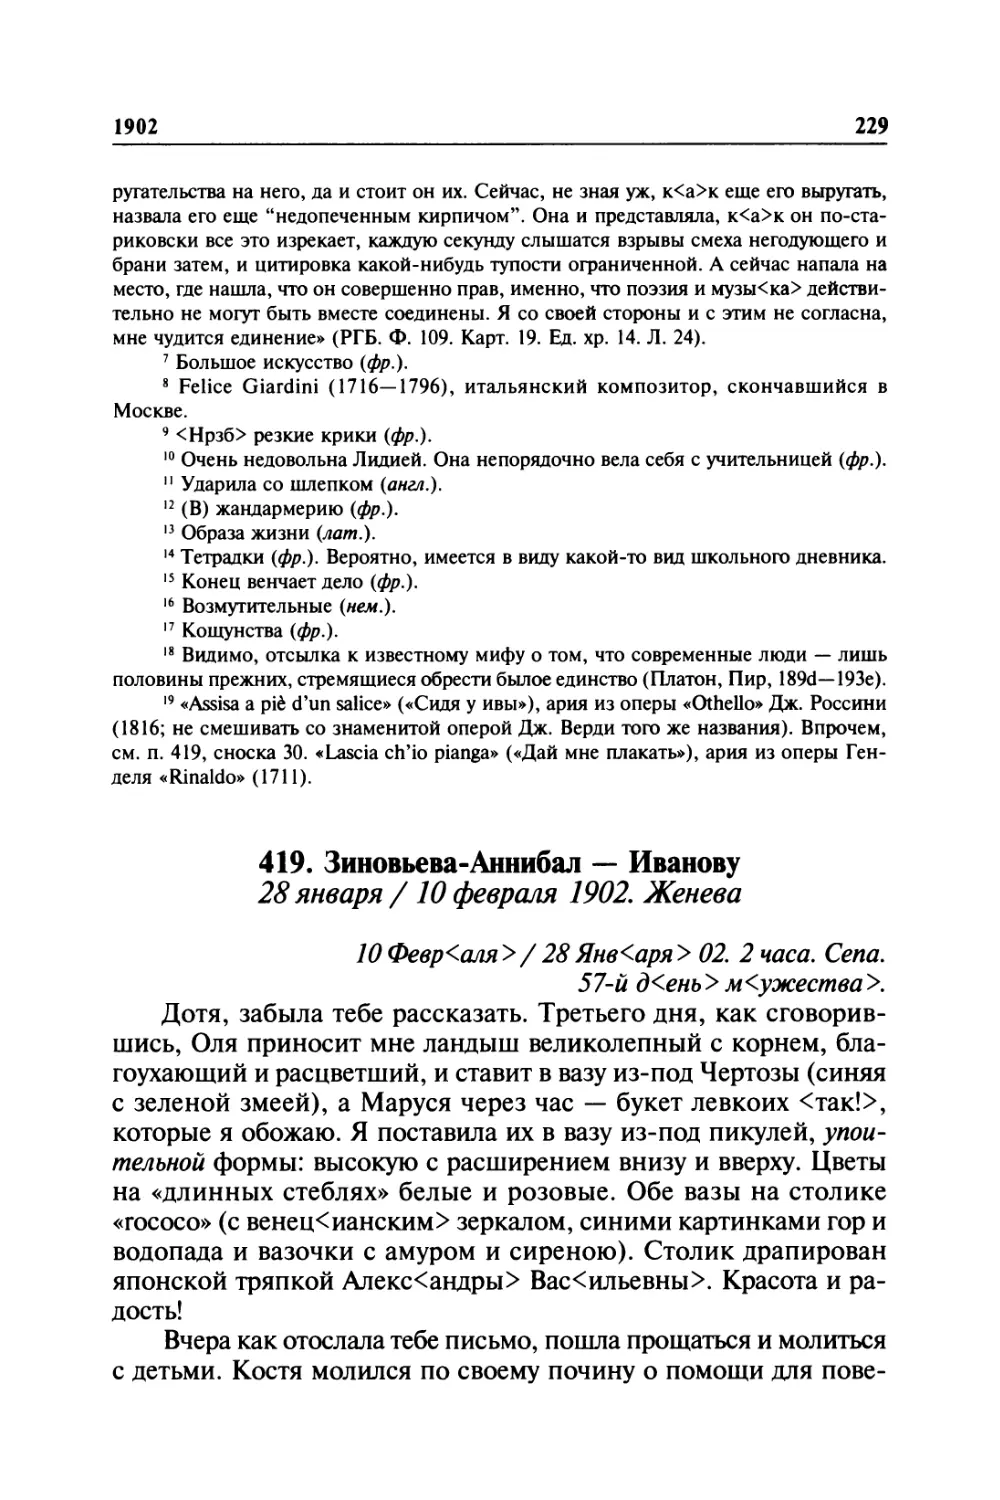 419. Зиновьева-Аннибал — Иванову. 28января / 10 февраля 1902. Женева